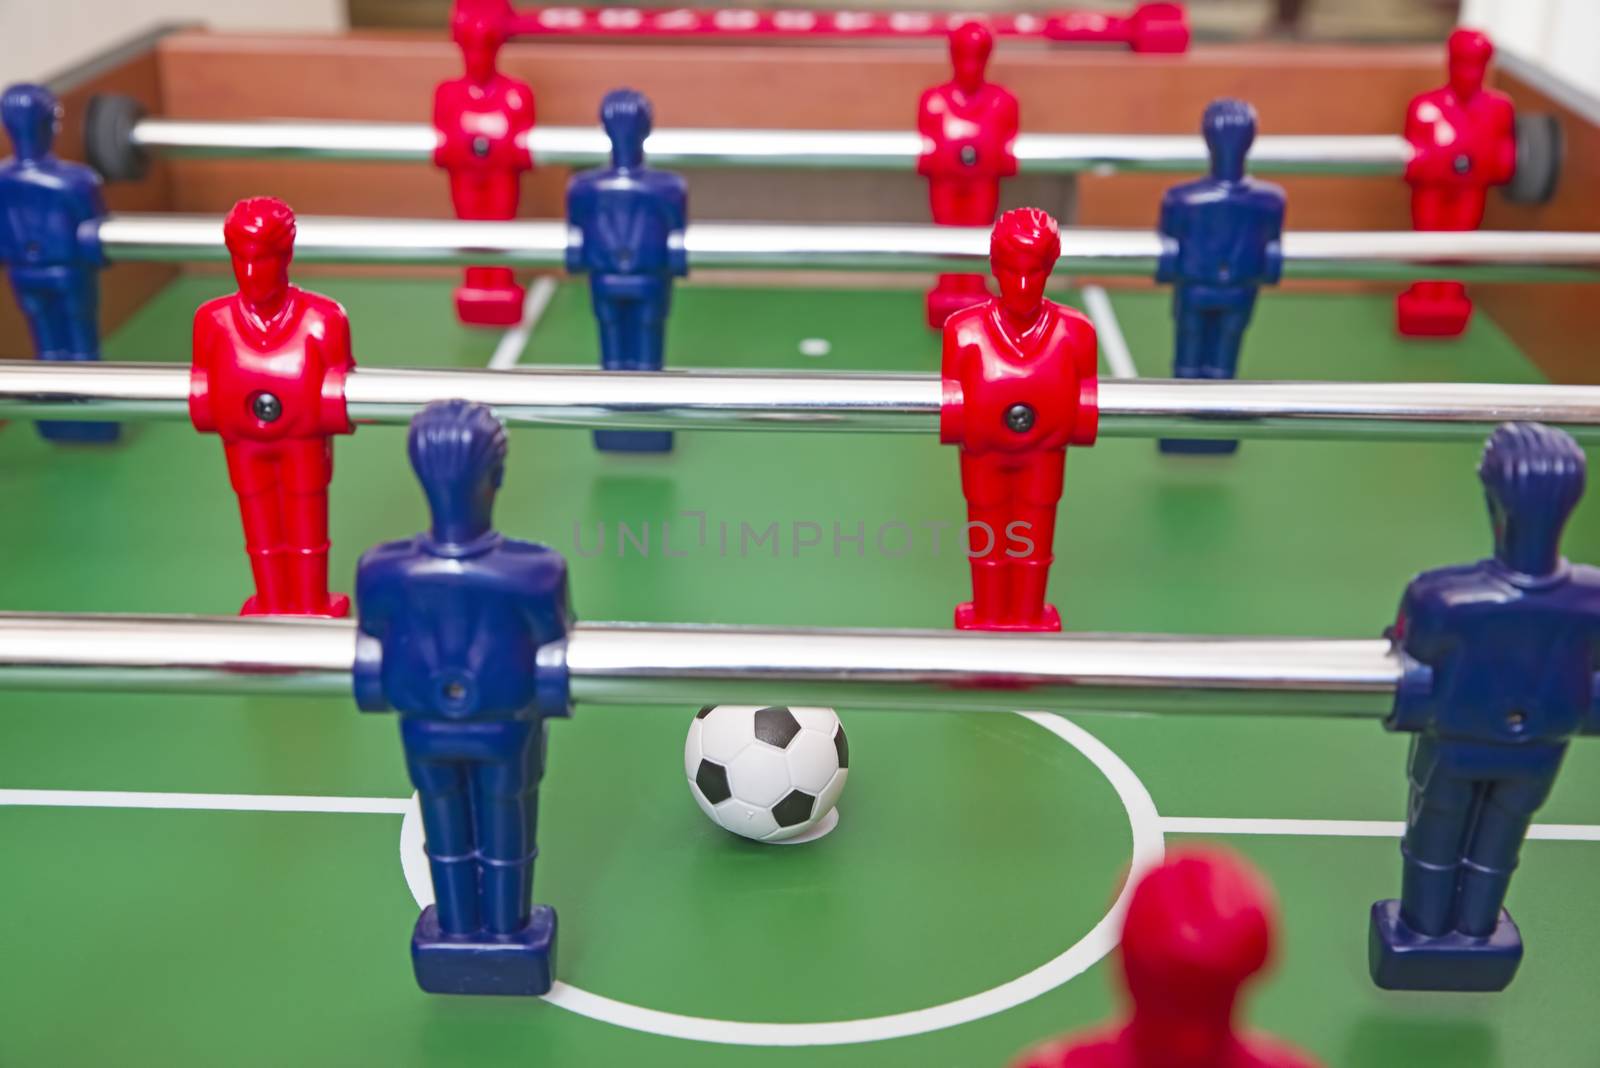 Soccer game table, ball at center for start